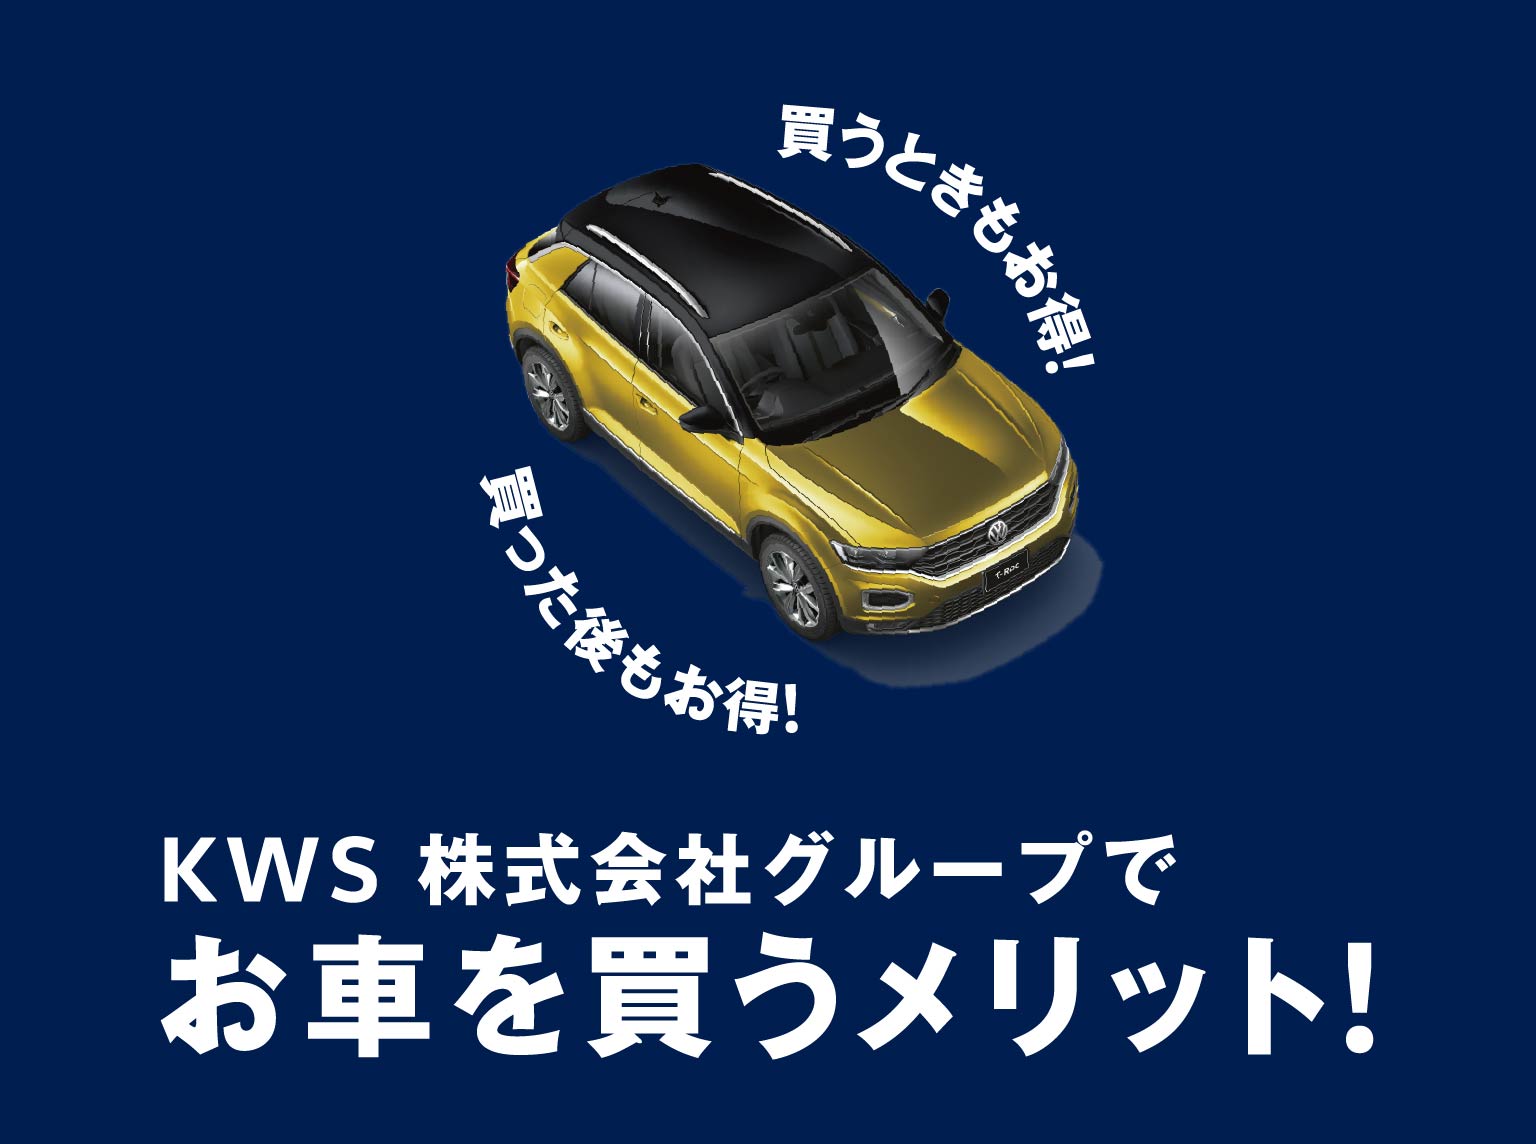 KWS株式会社グループでお車を買うメリット